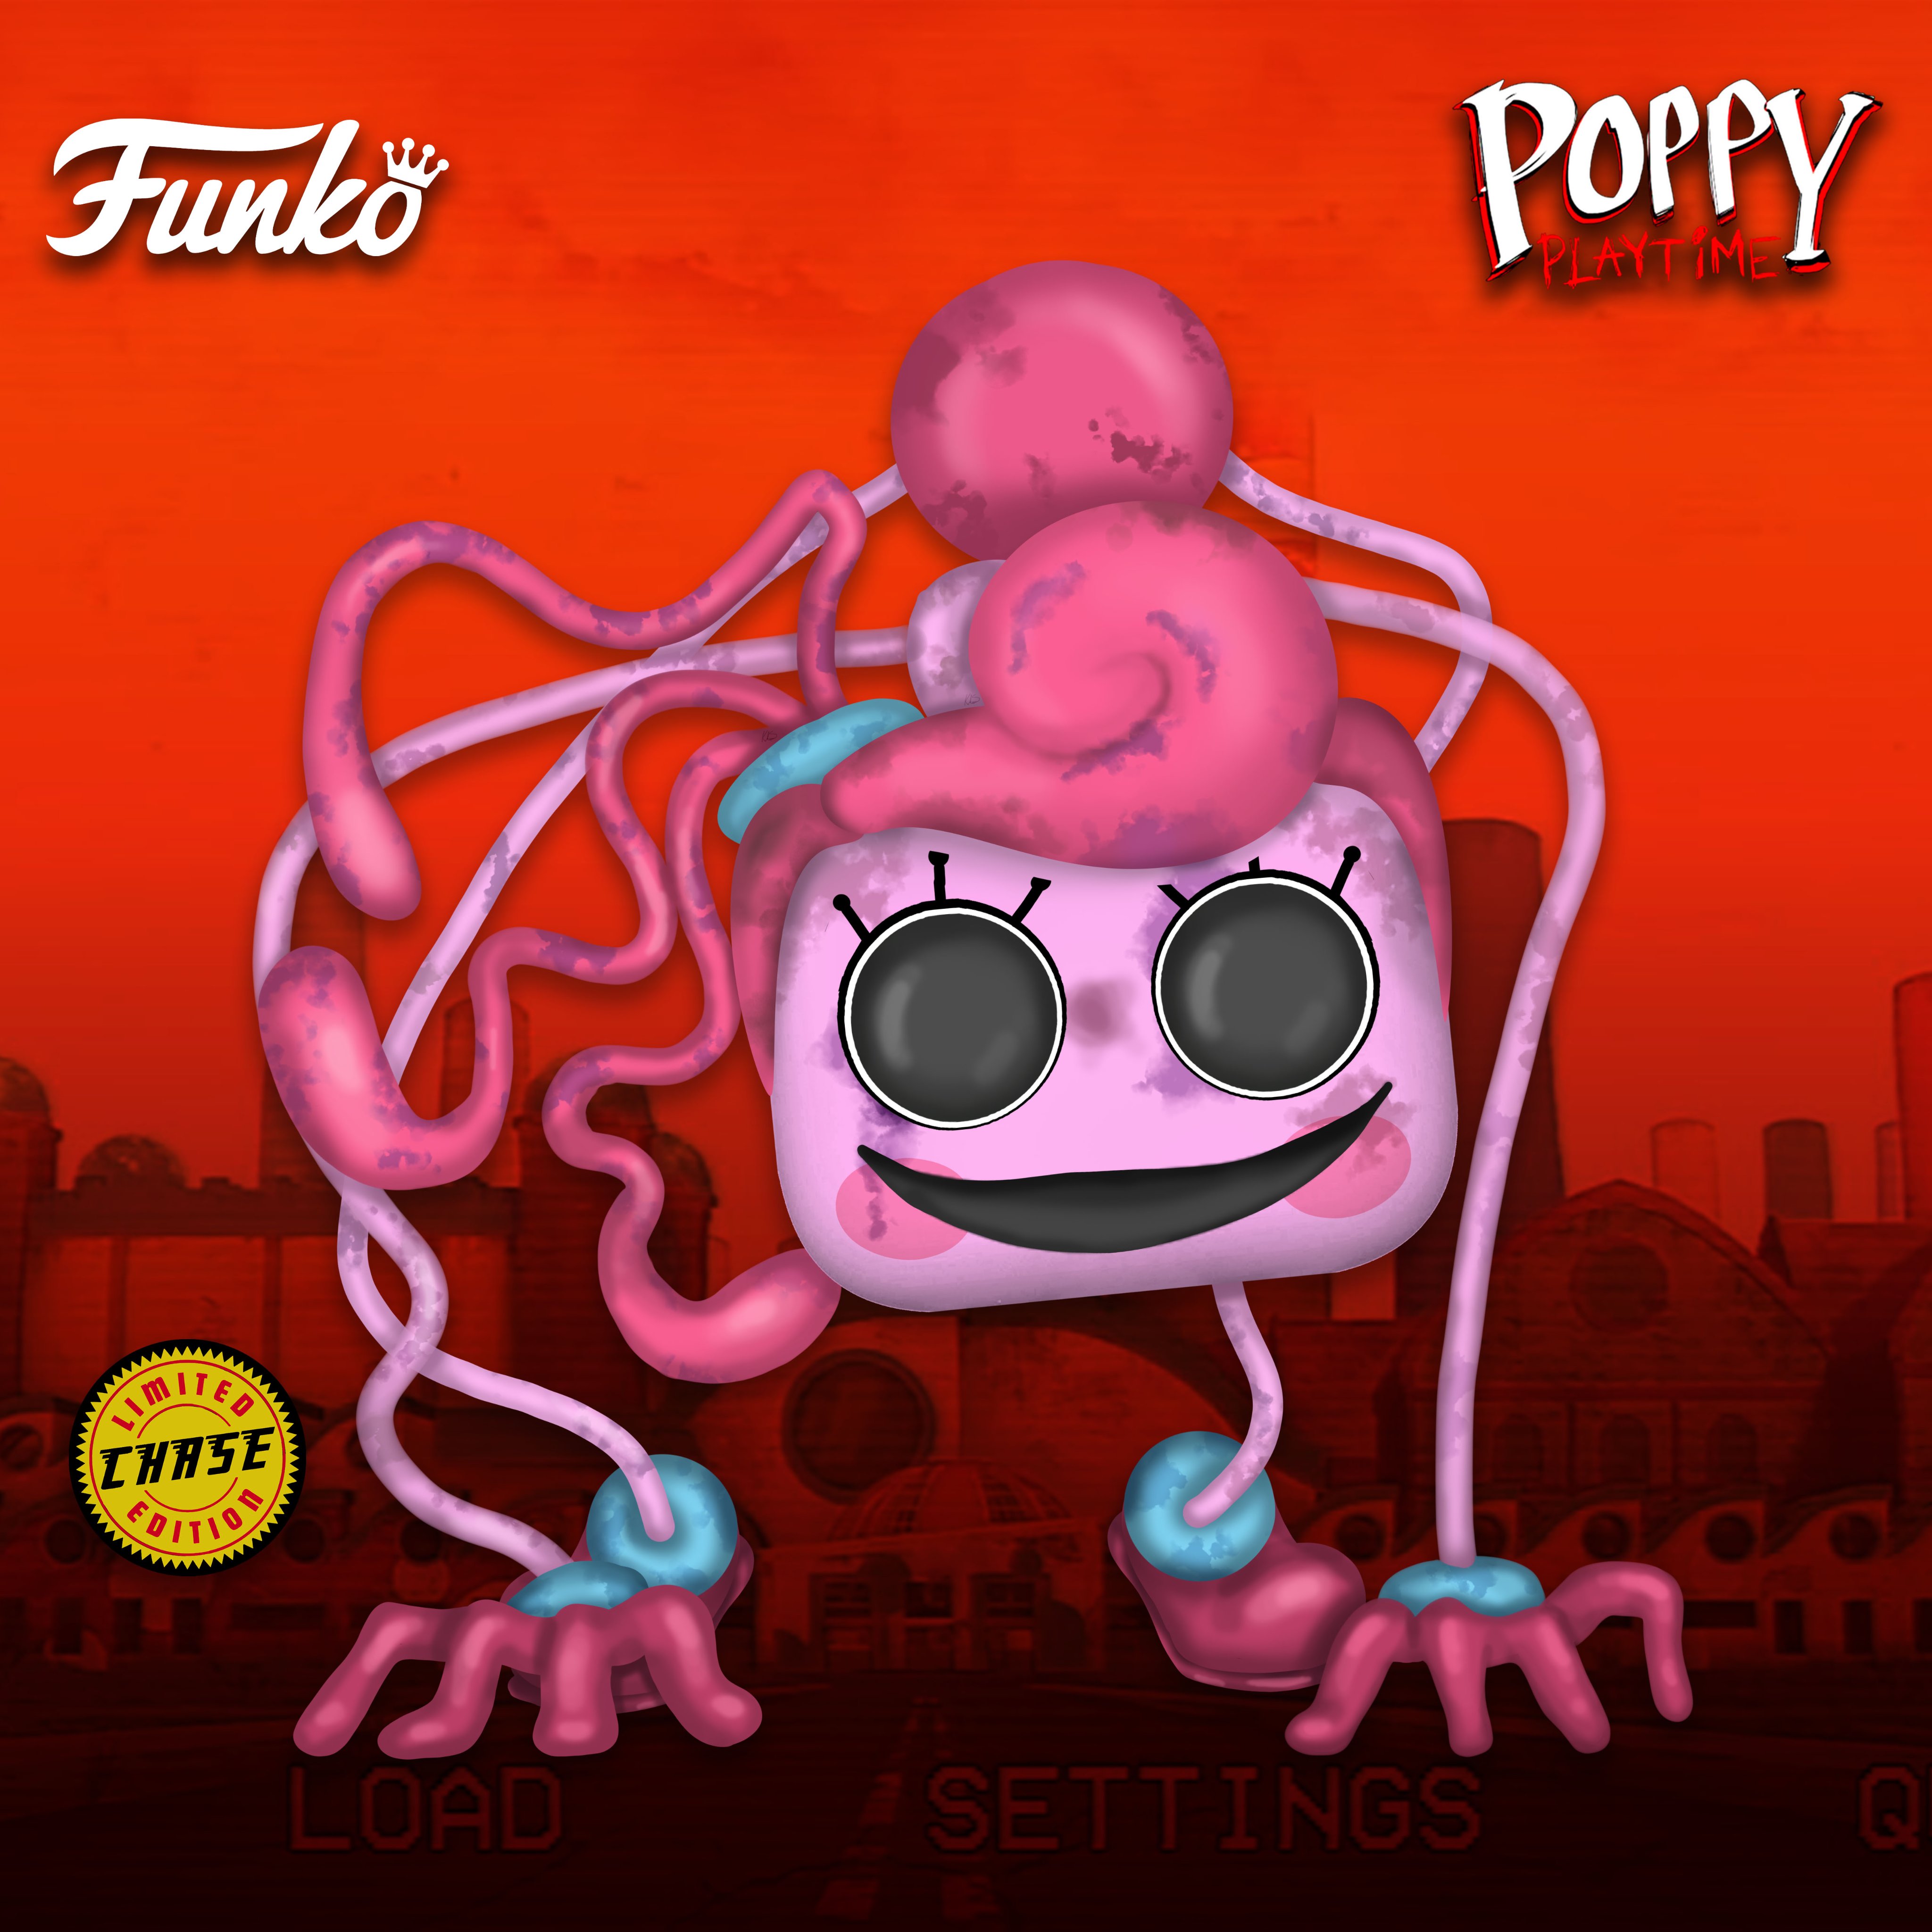 Funko pop poppy playtime 2